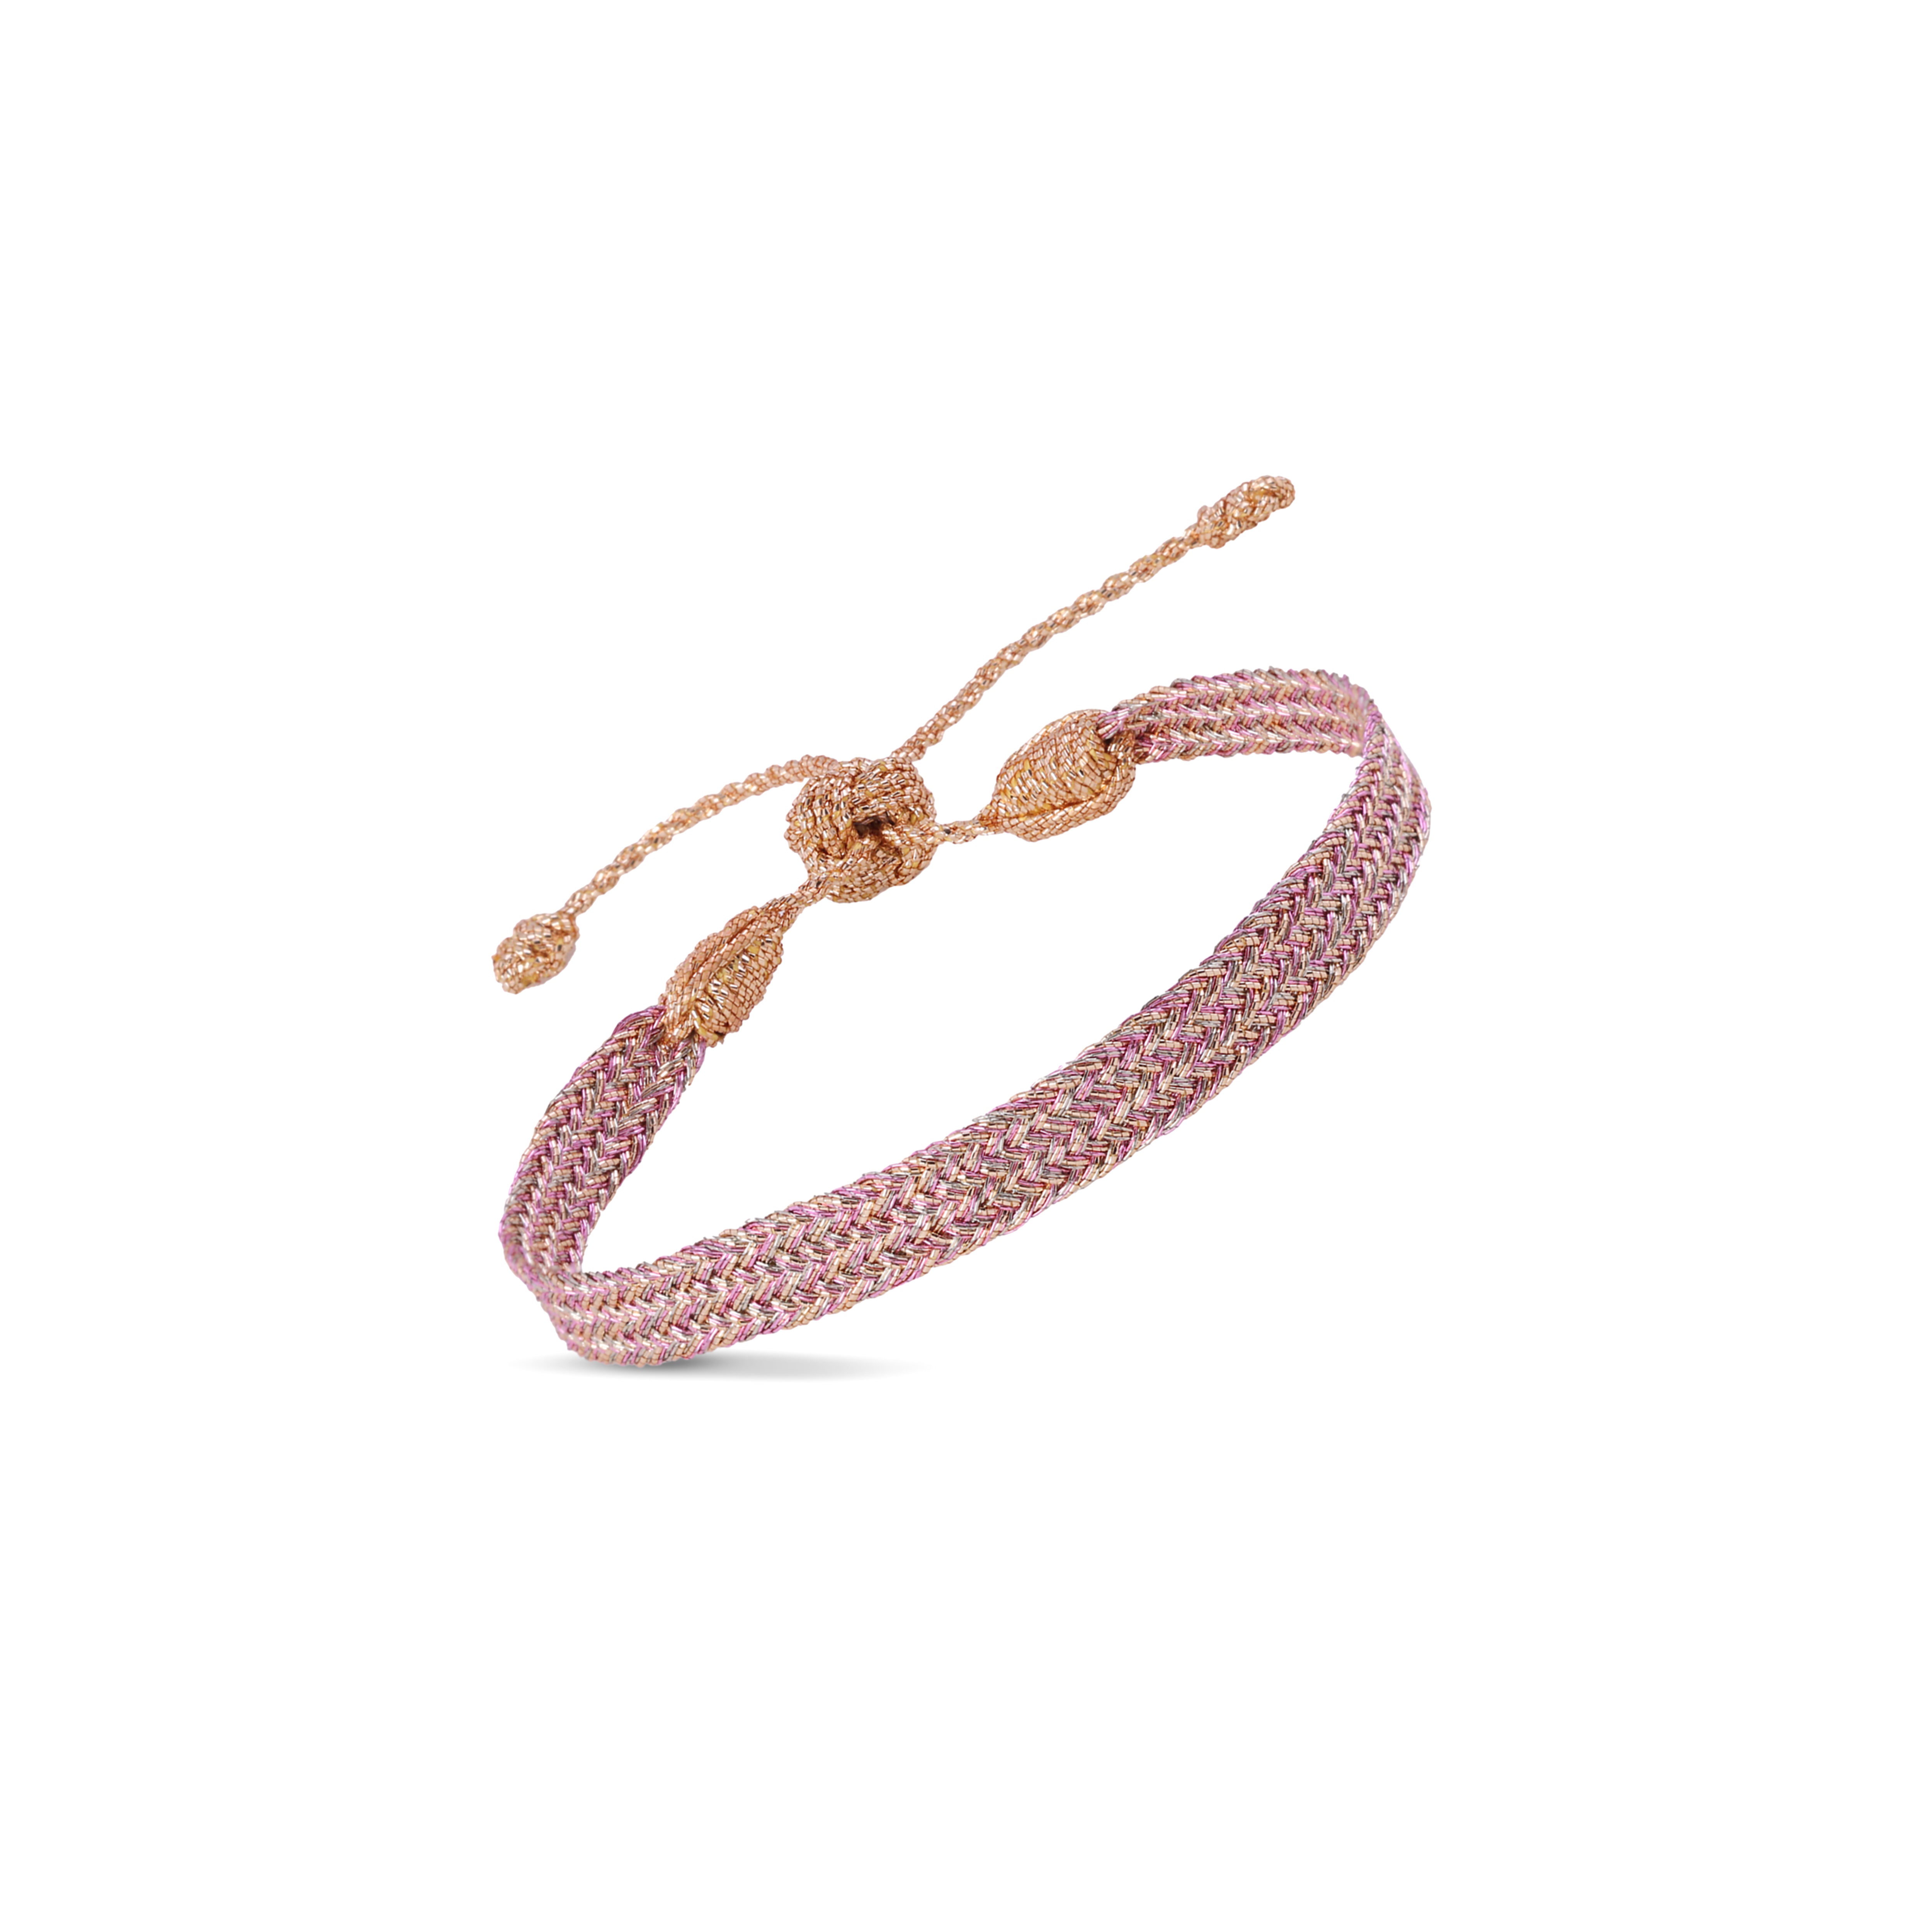 Ania n°1 Bracelet in Peach Pink